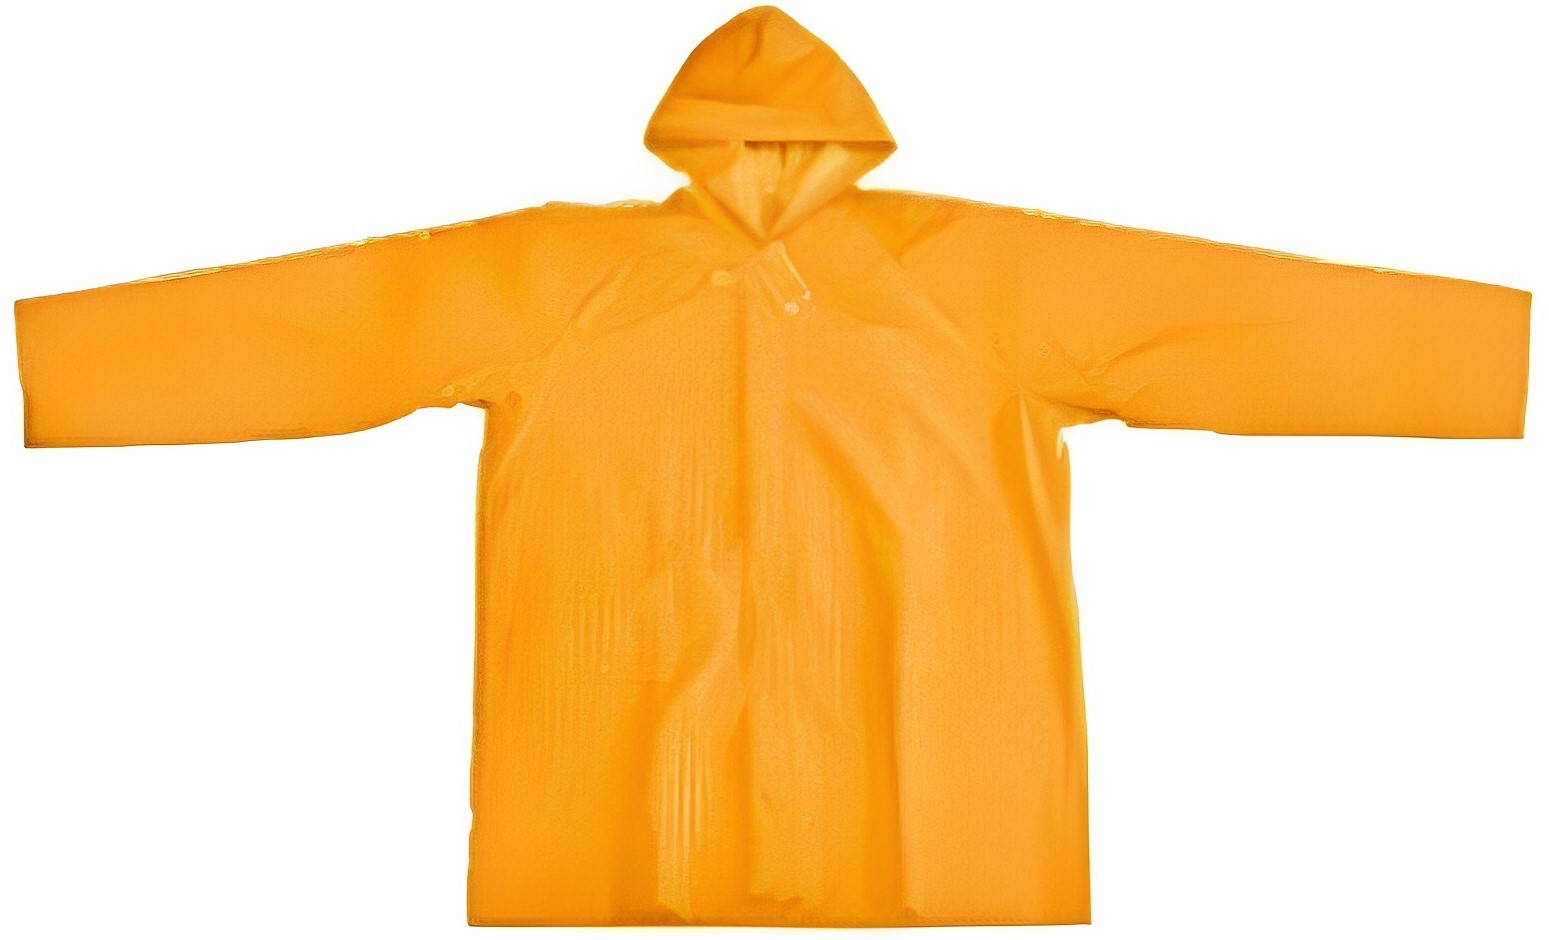 Hình ảnh 3 của mặt hàng Bộ đồ áo mưa bảo hộ có mũ cộc tay size XXL Tolsen 45199